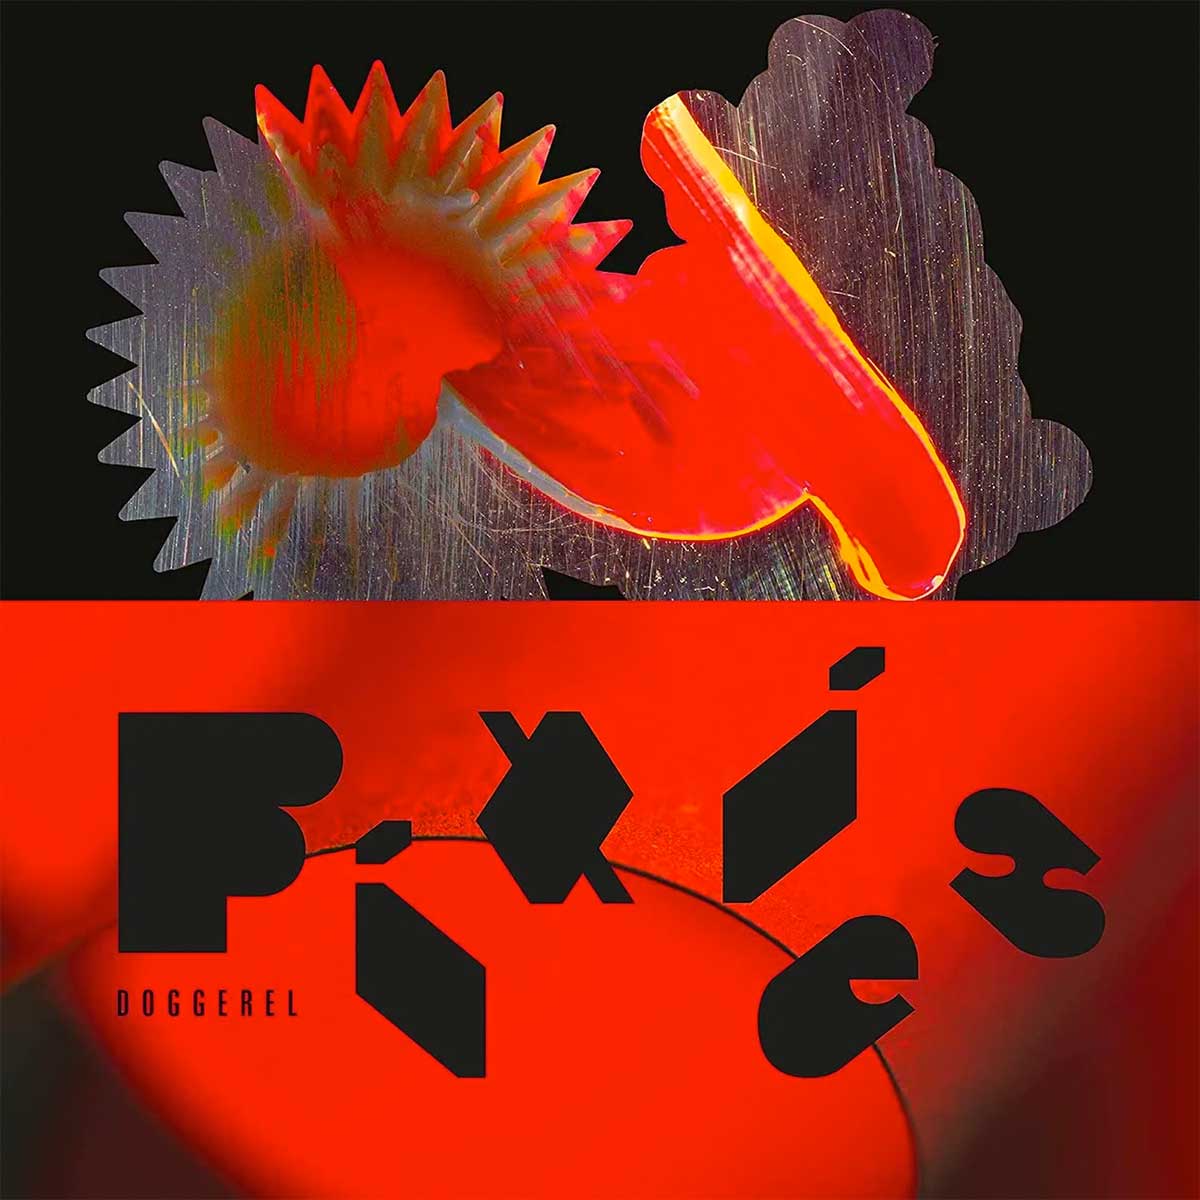 Tapa de Doggerel, disco de Pixies